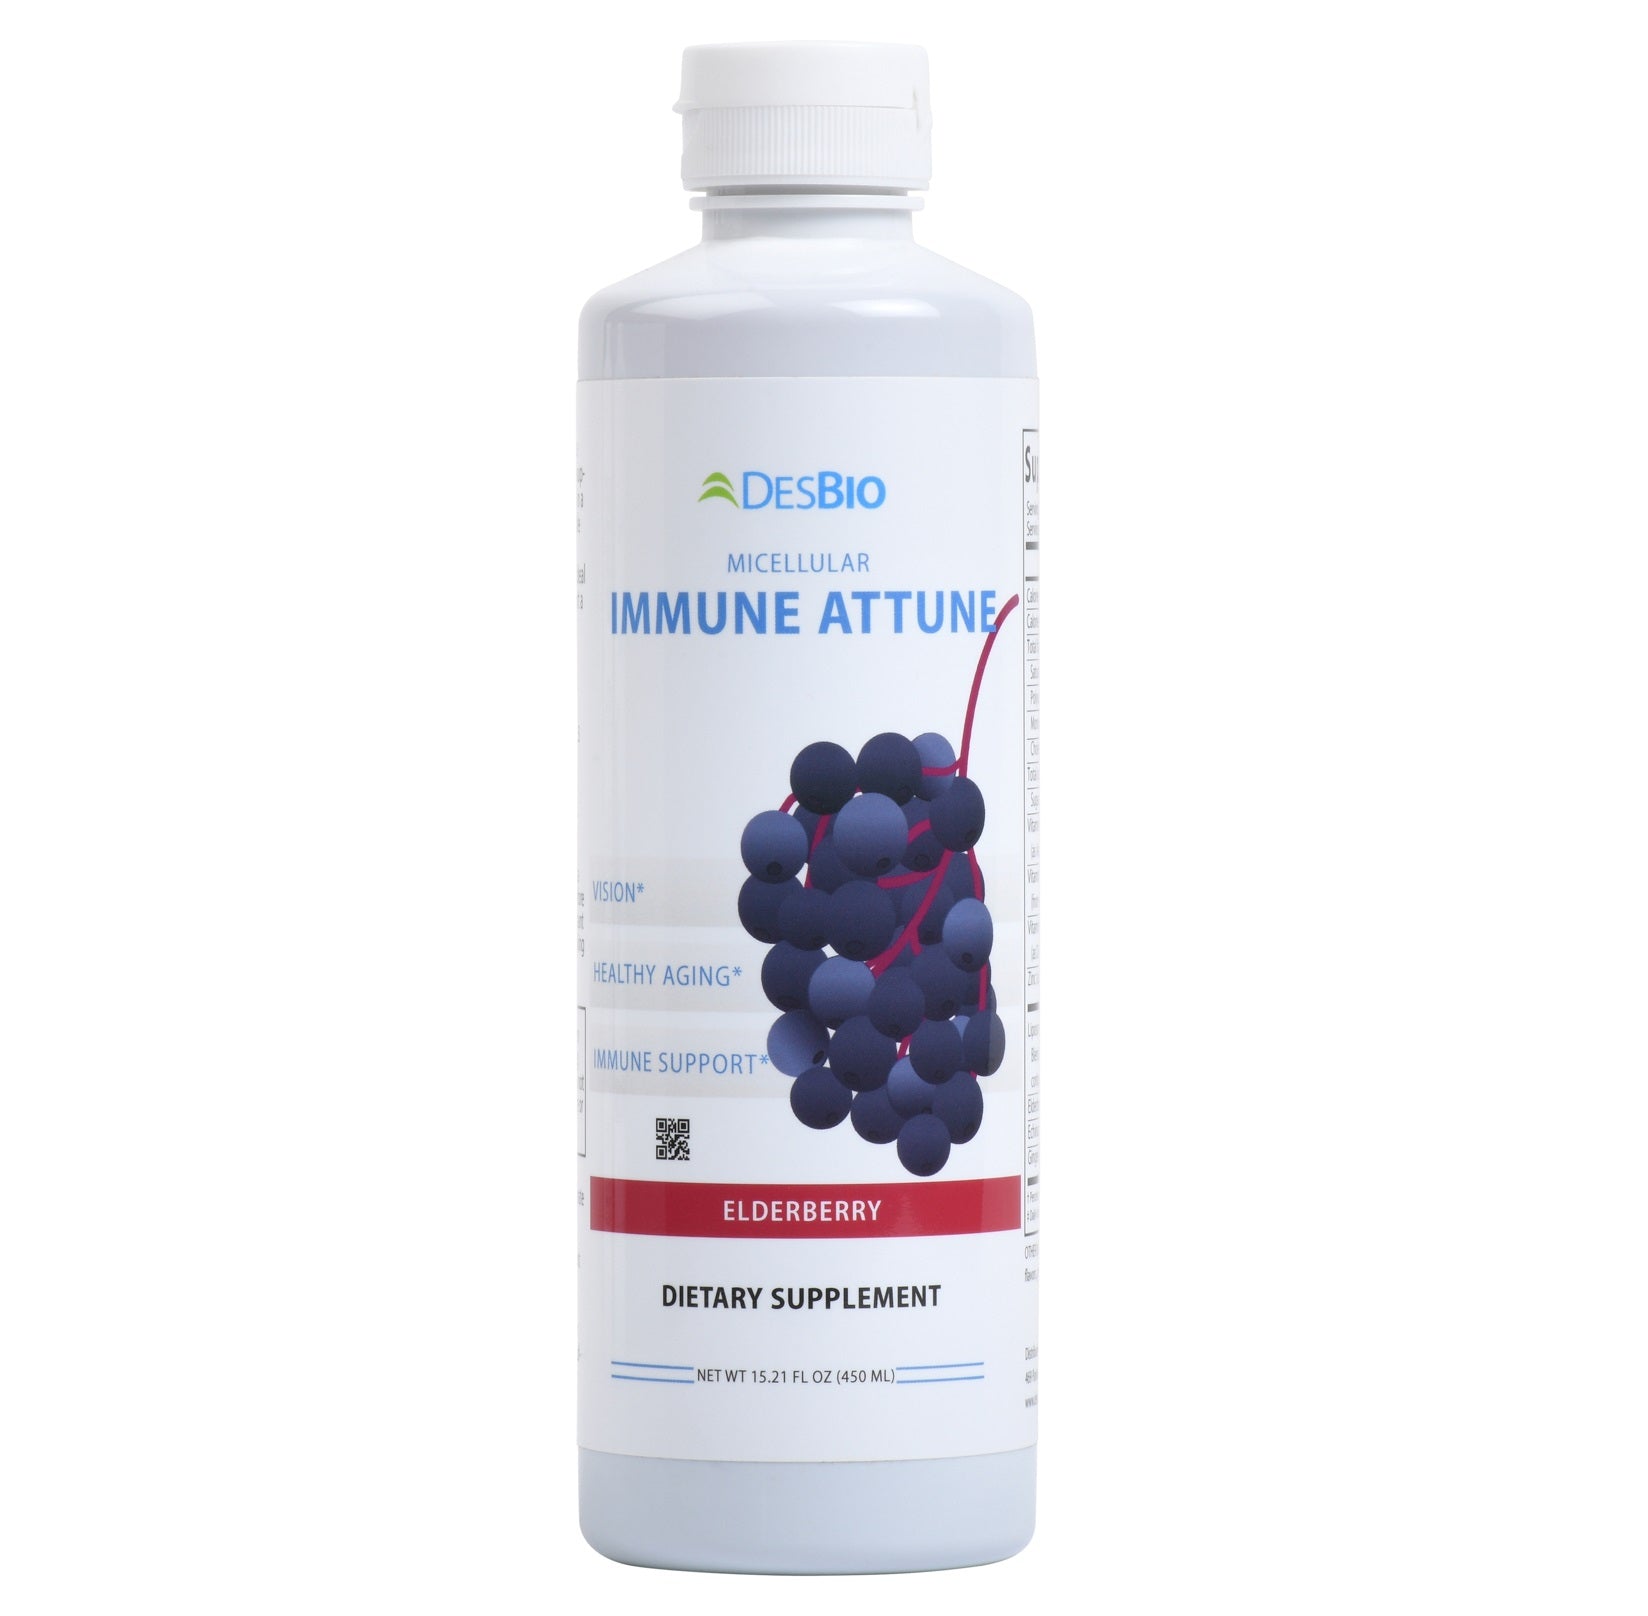 DesBio Immune Attune Micellular Dietary Supplement Elderberry 15.21 fl oz